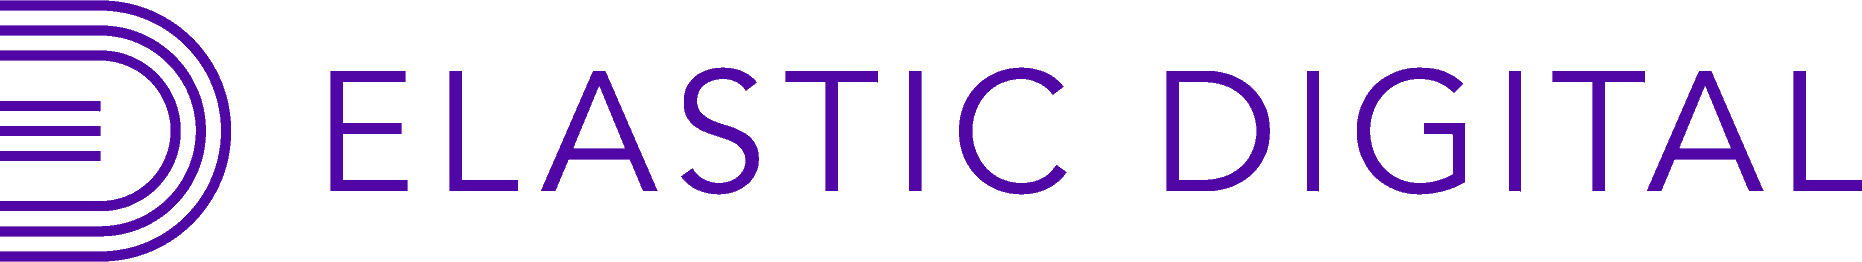 Elastic digital logo